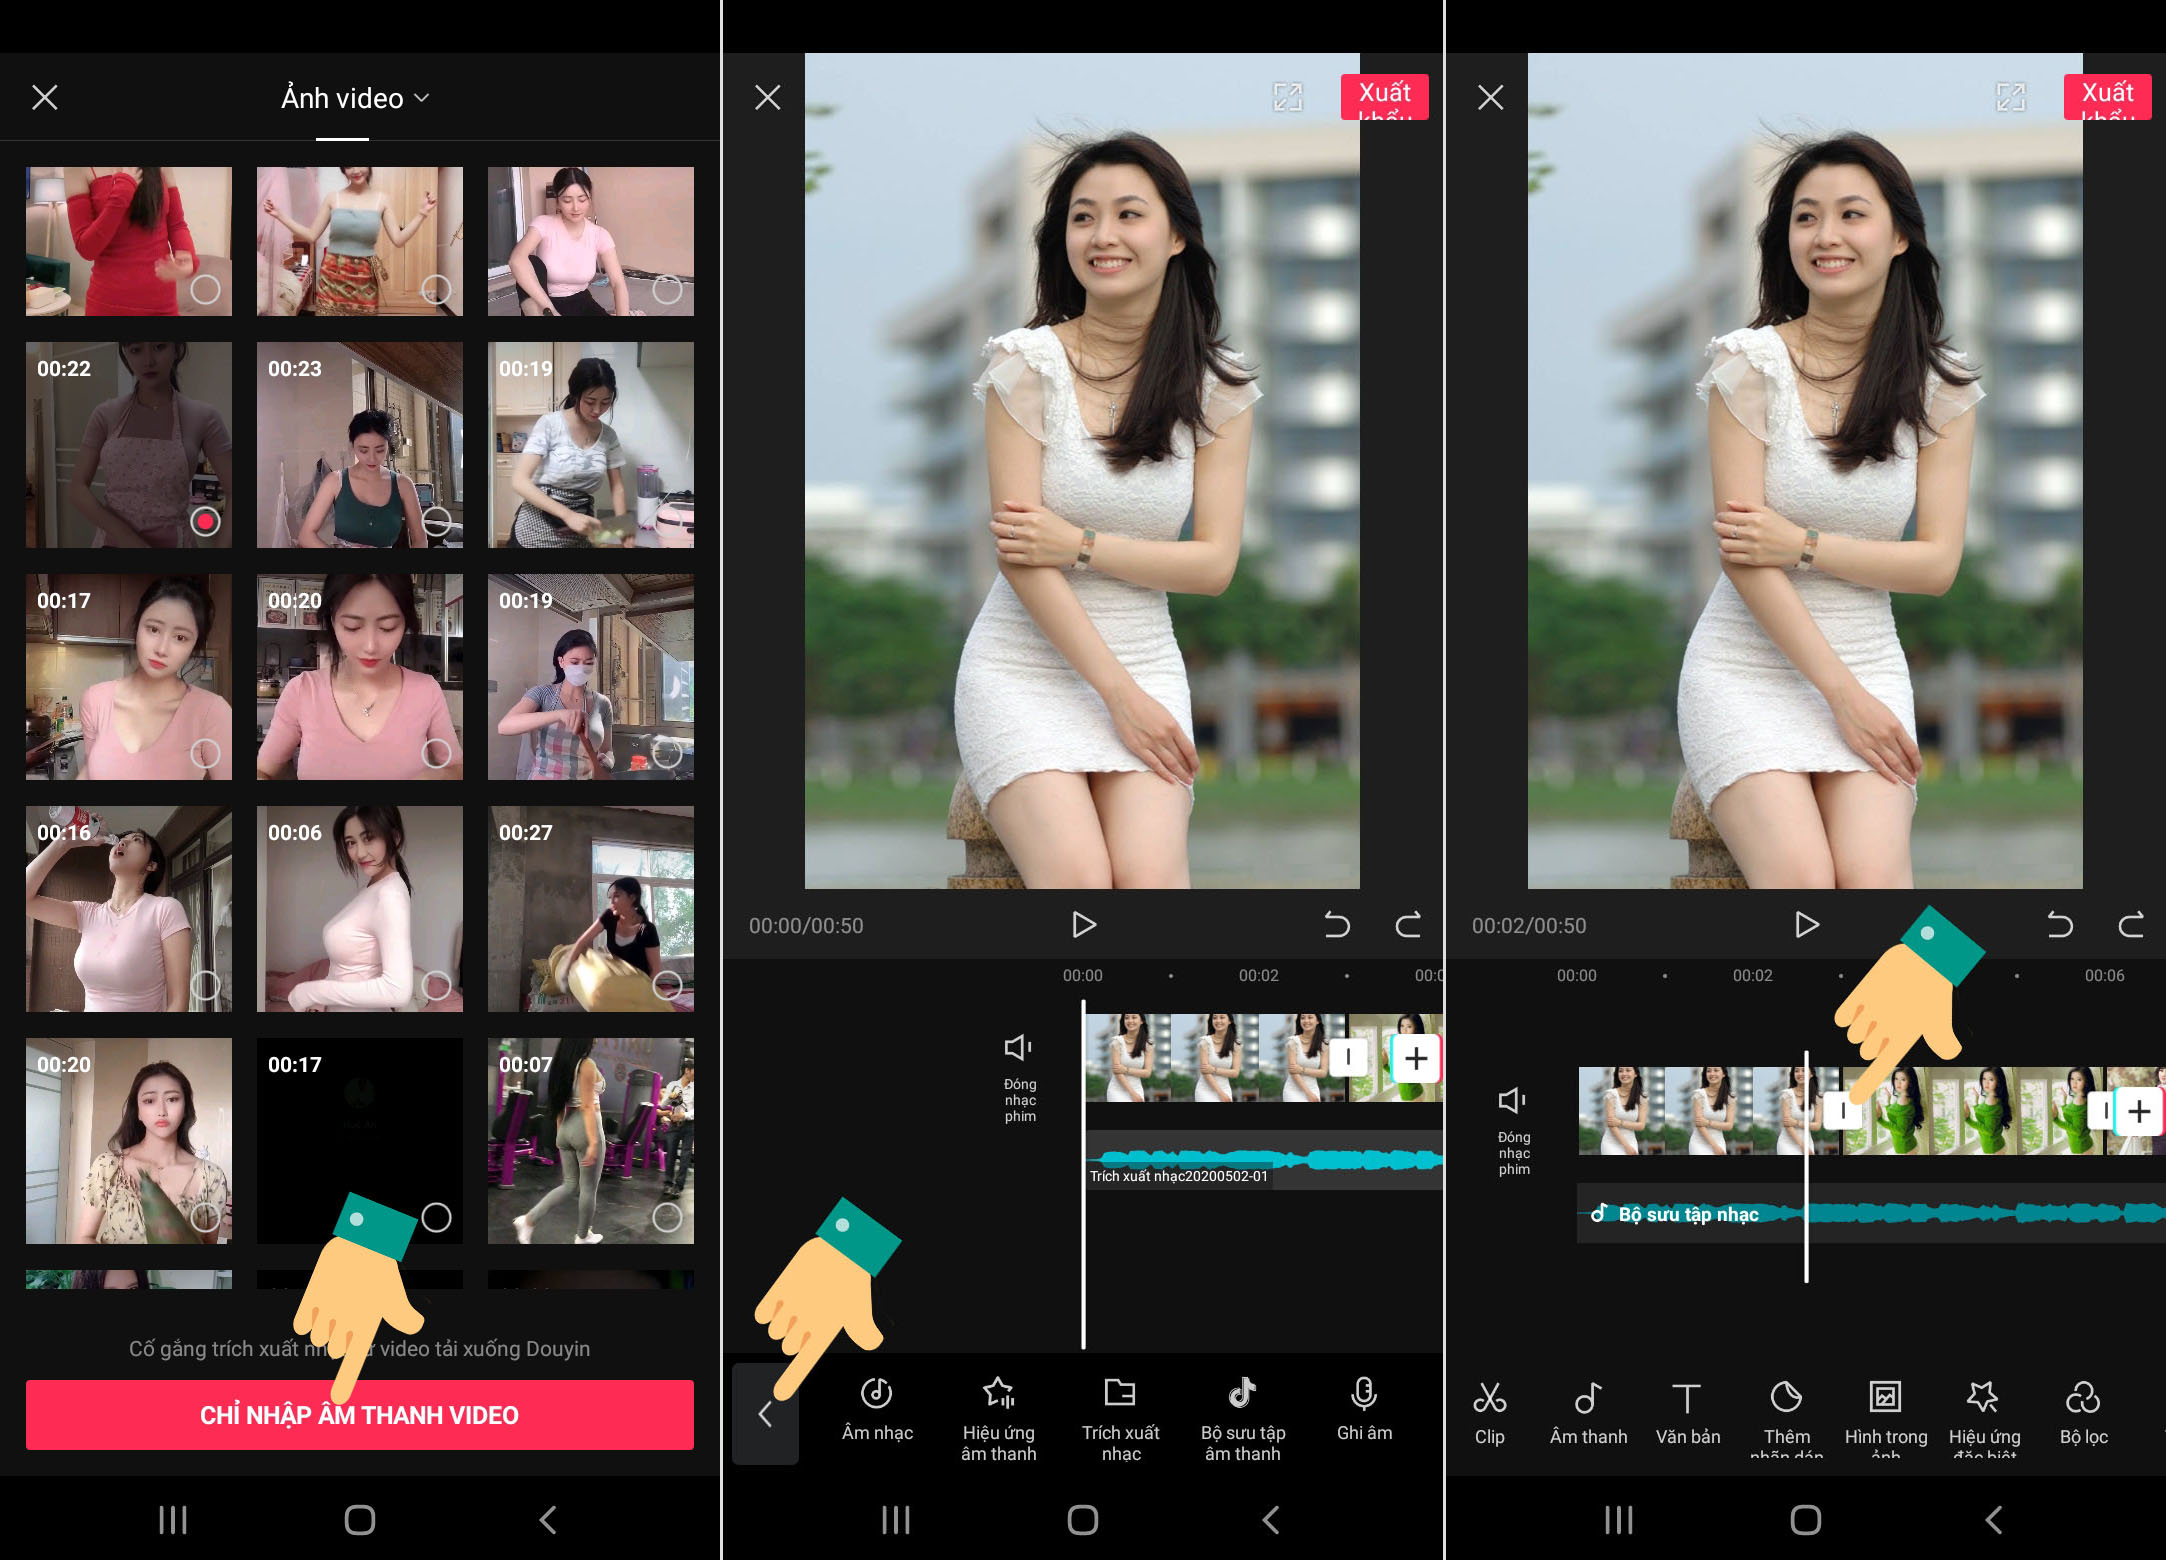 Cách edit video bằng app chỉnh video Trung Quốc JianYing 2